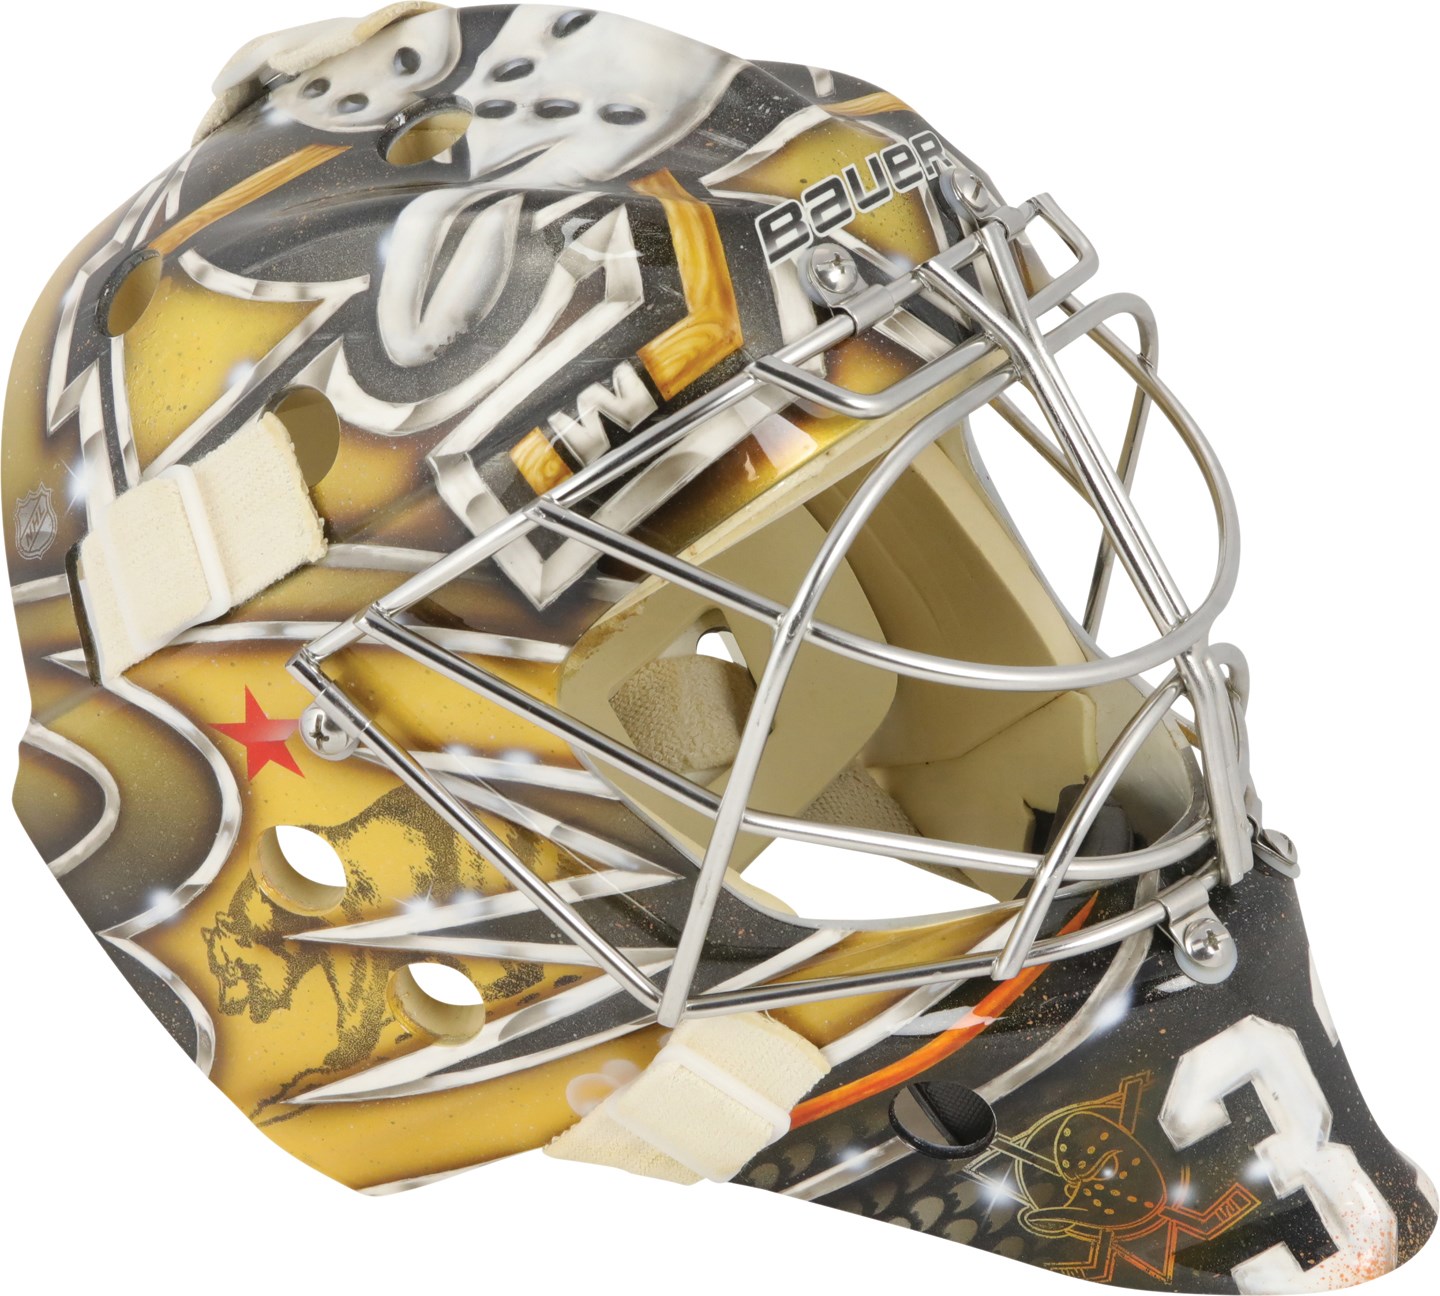 Hockey - 2016 Frederik Andersen Anaheim Ducks Game Worn Goalie's Mask